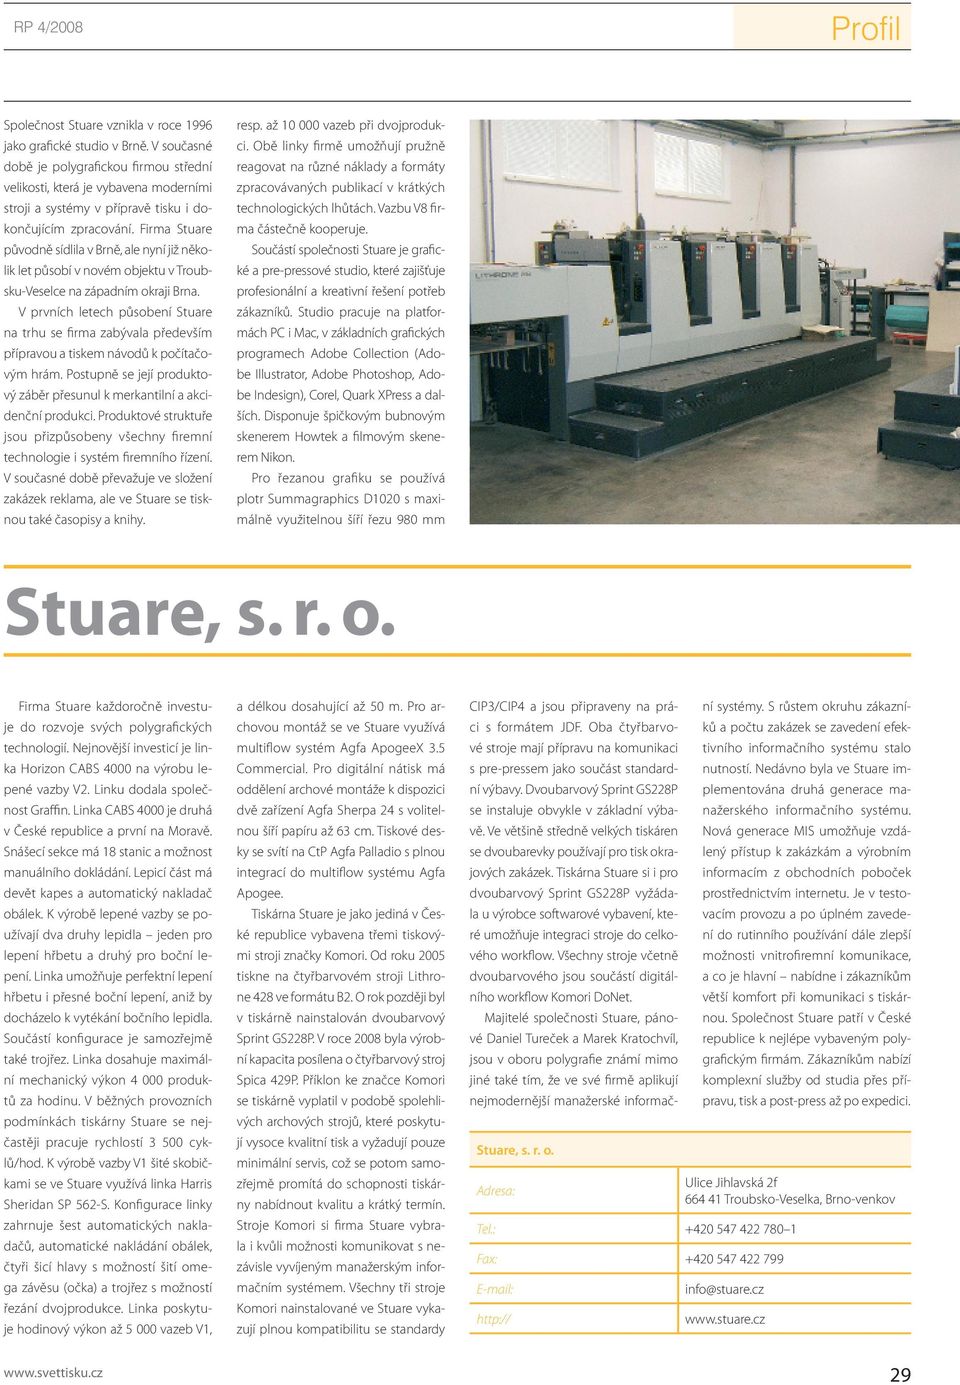 Firma Stuare původně sídlila v Brně, ale nyní již několik let působí v novém objektu v Troubsku-Veselce na západním okraji Brna.